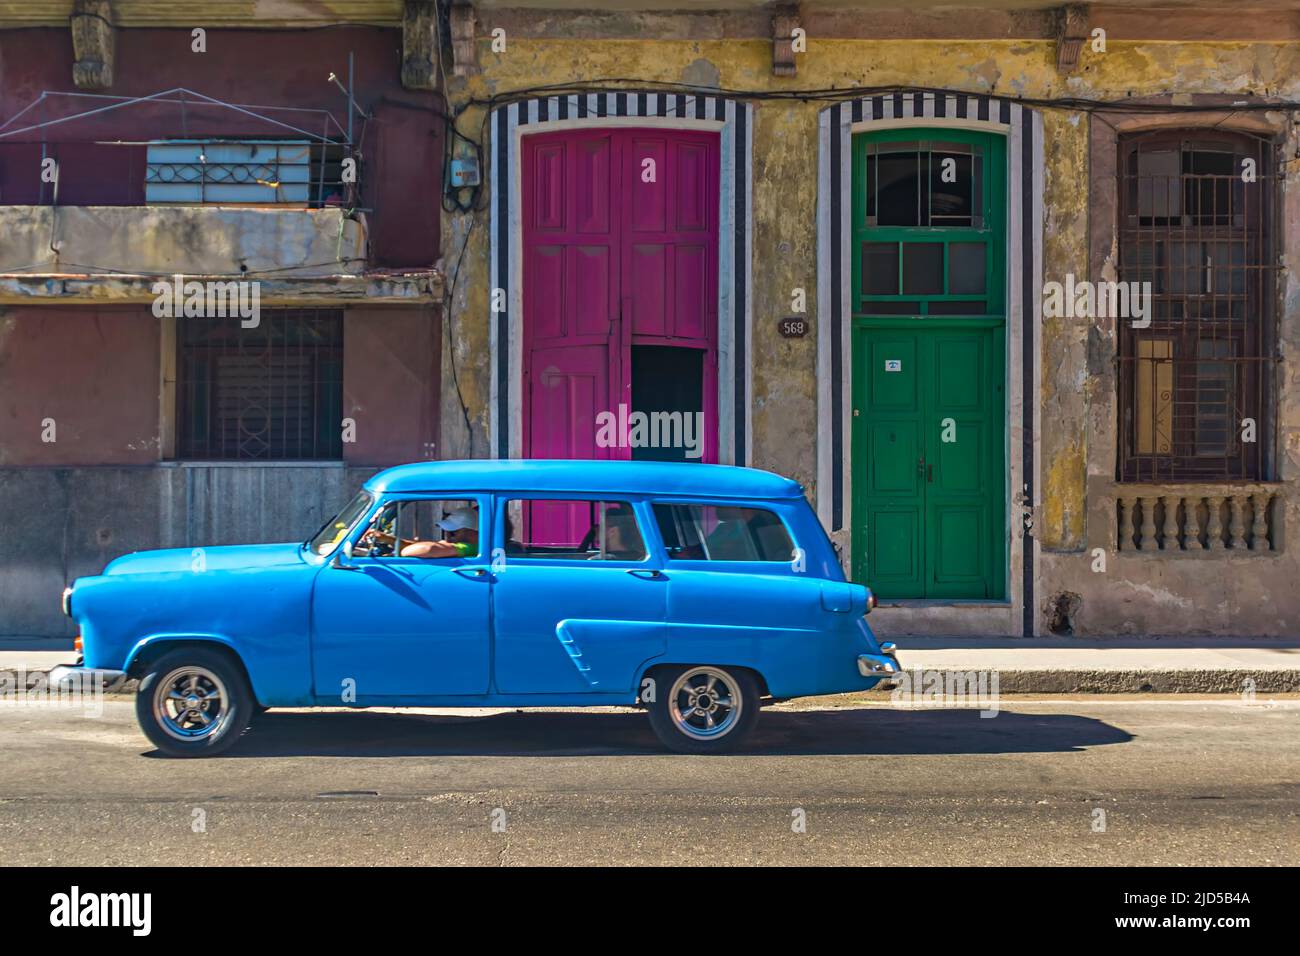 Ein hellblauer Oldtimer fährt an einer violetten und einer grünen Haustüre in der Altstadt von Havanna, Kuba vorbei Stockfoto